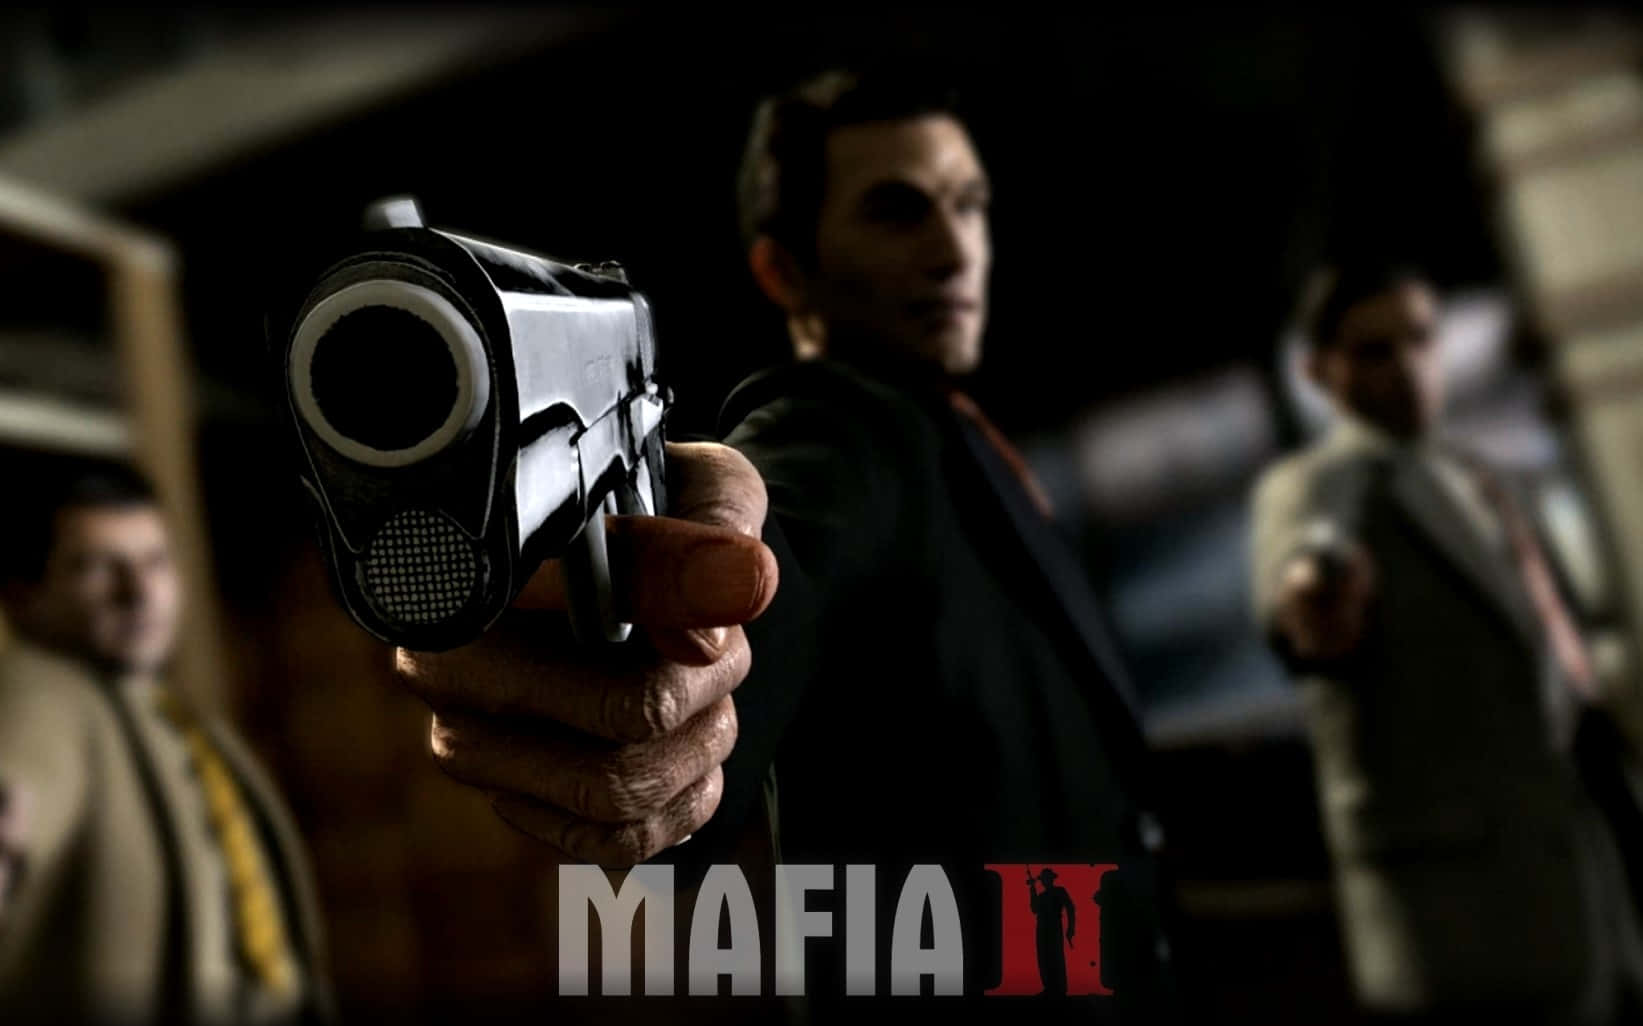 Mafiaii Gangster Mit Waffen Wallpaper